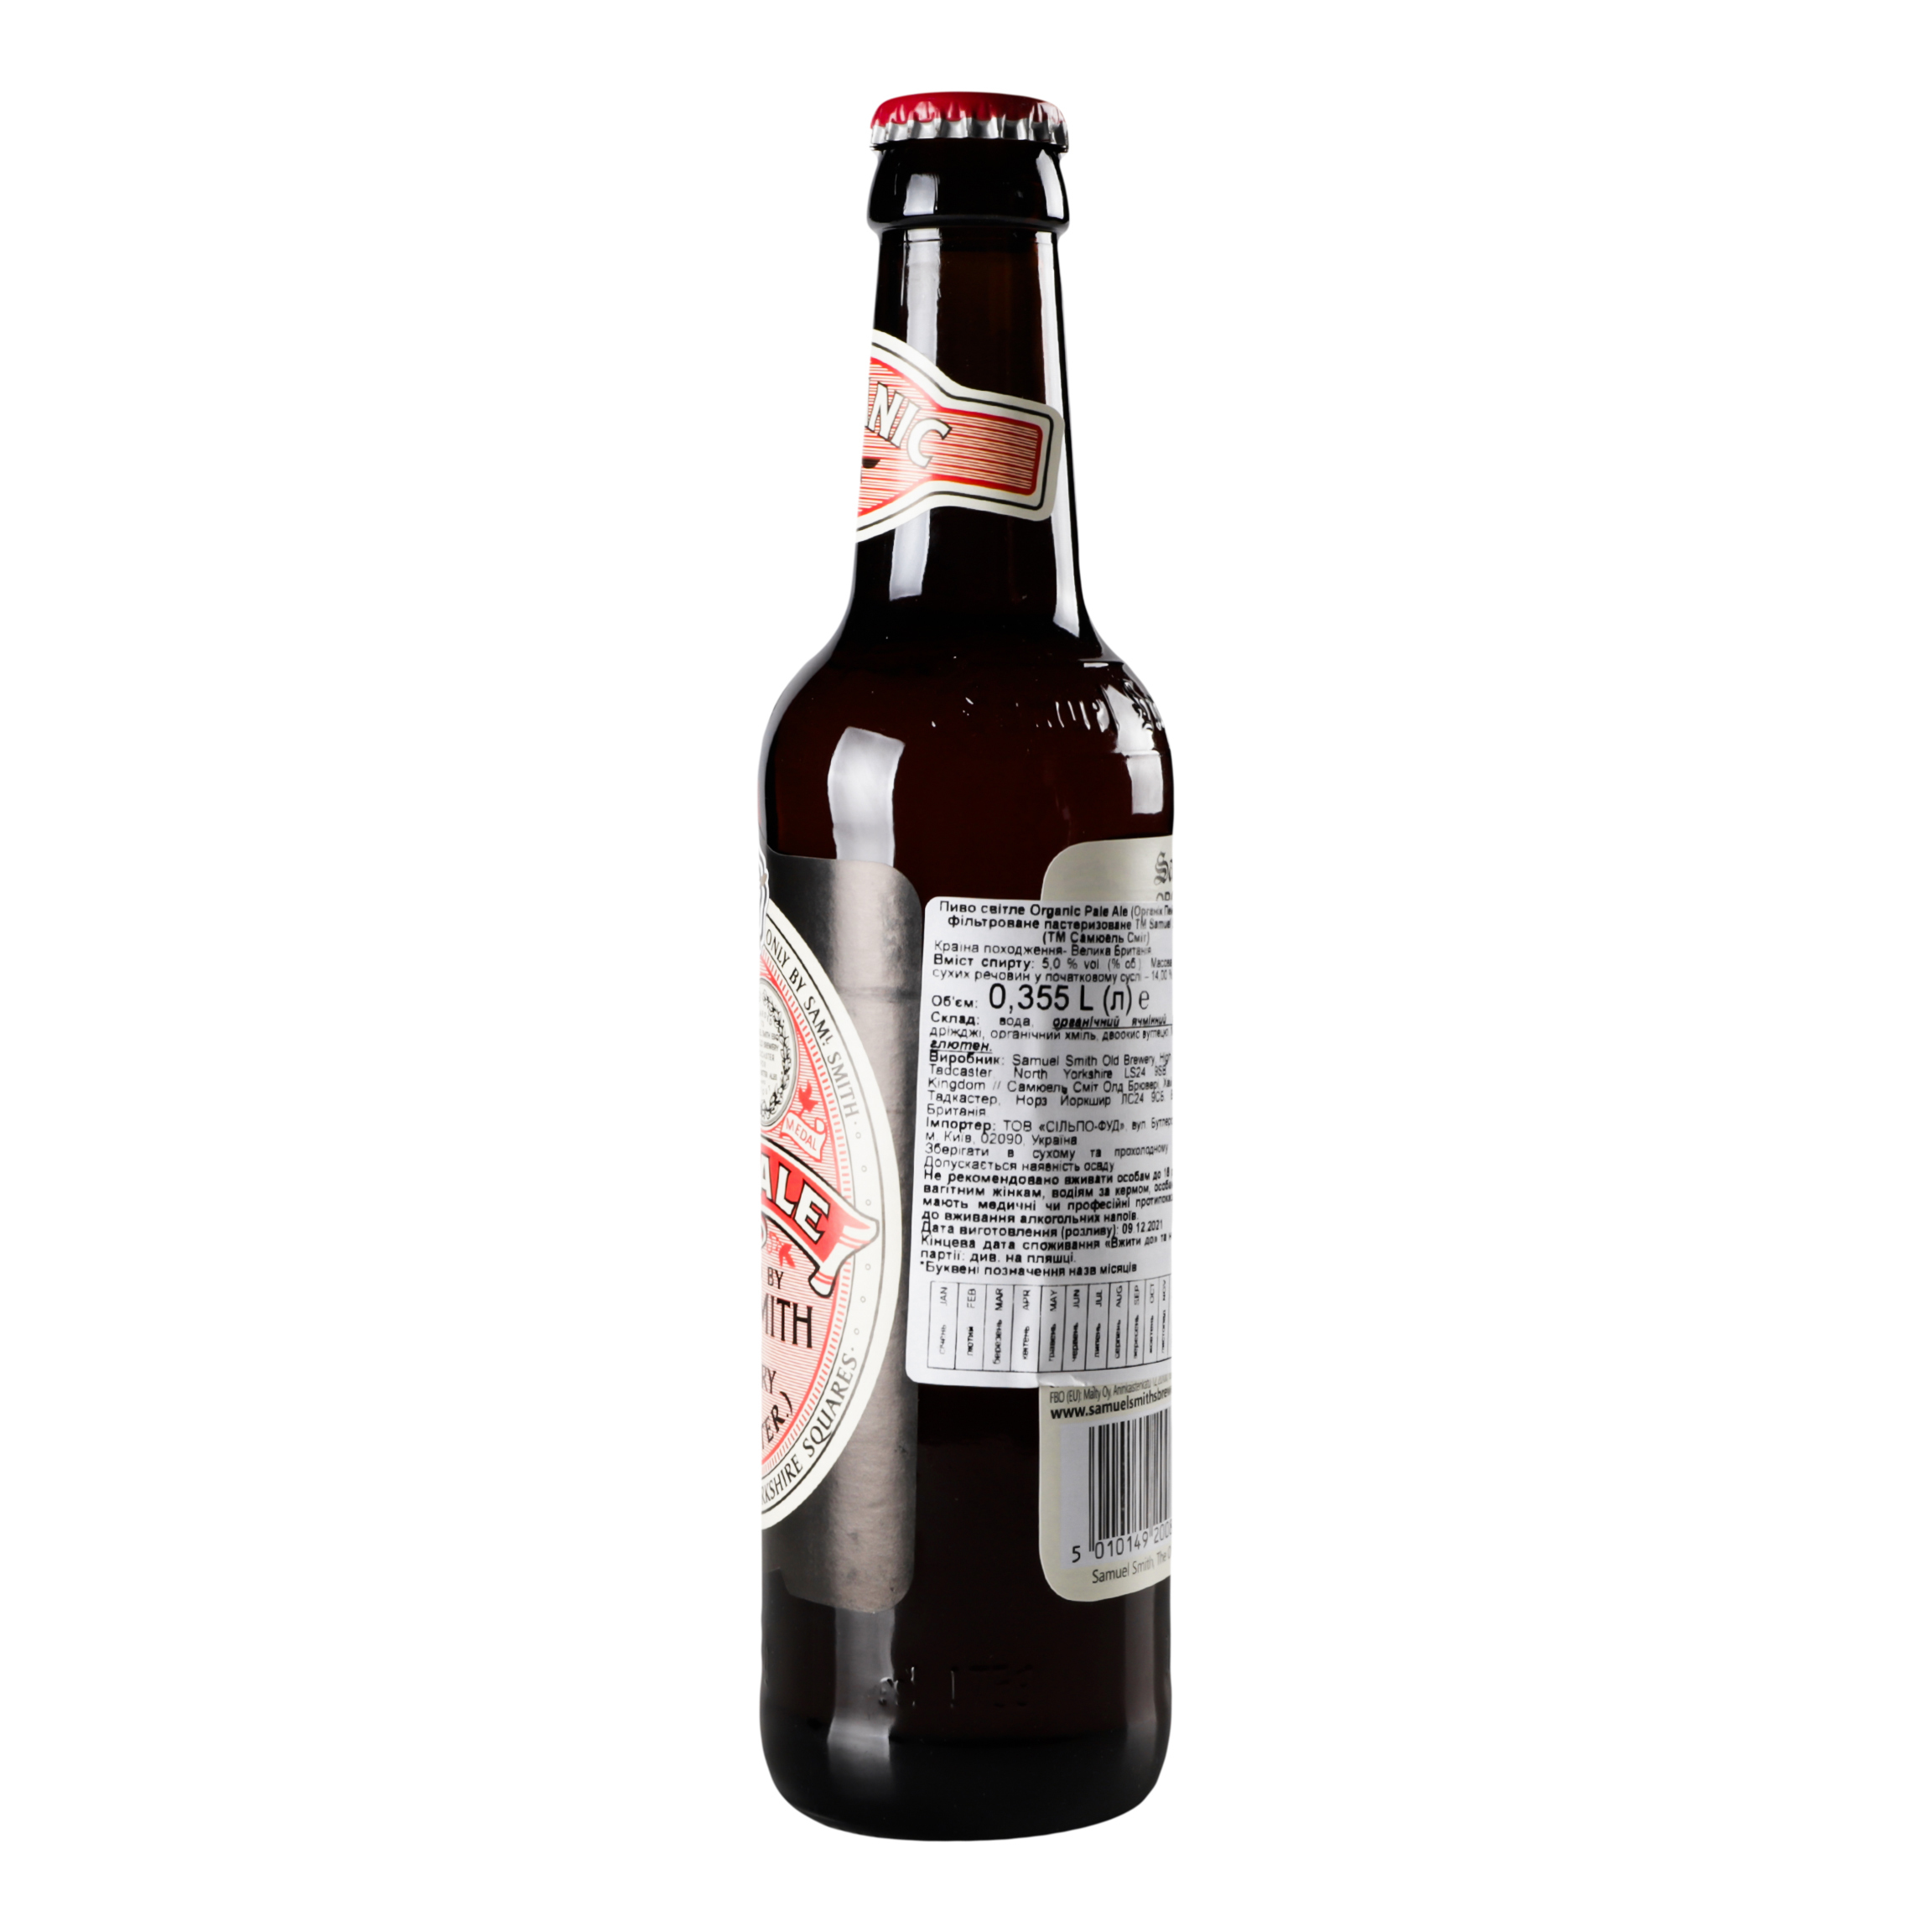 Пиво Samuel Smith Organic Pale Ale светлое, 5%, 0,355 л (789763) - фото 2